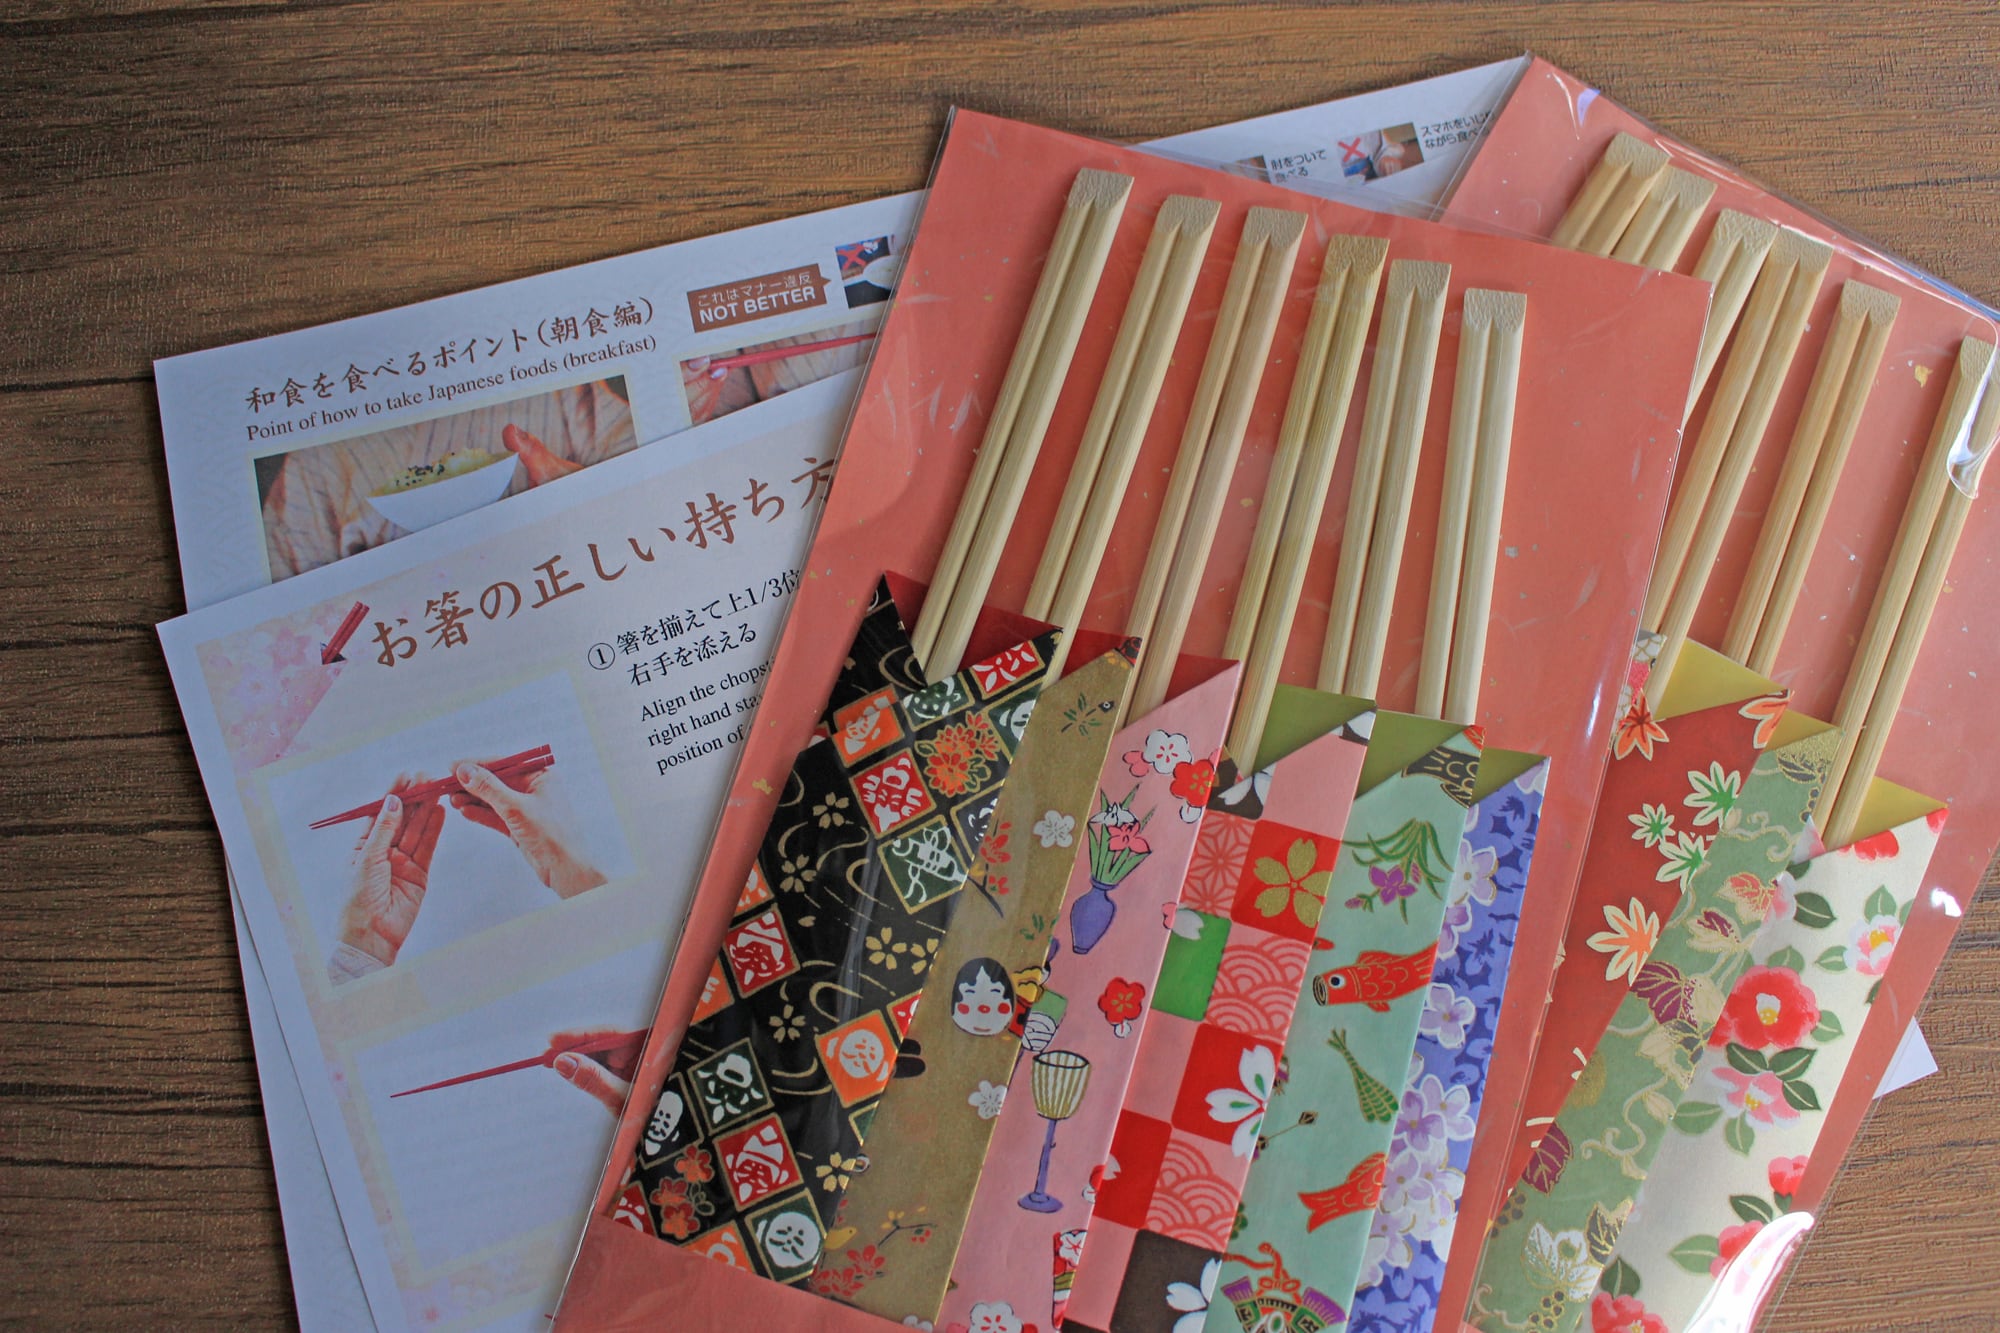 和紙友禅柄箸袋No.4 日本の風物詩シリーズ12本セット 折り紙箸袋 お箸の持ち方説明書付